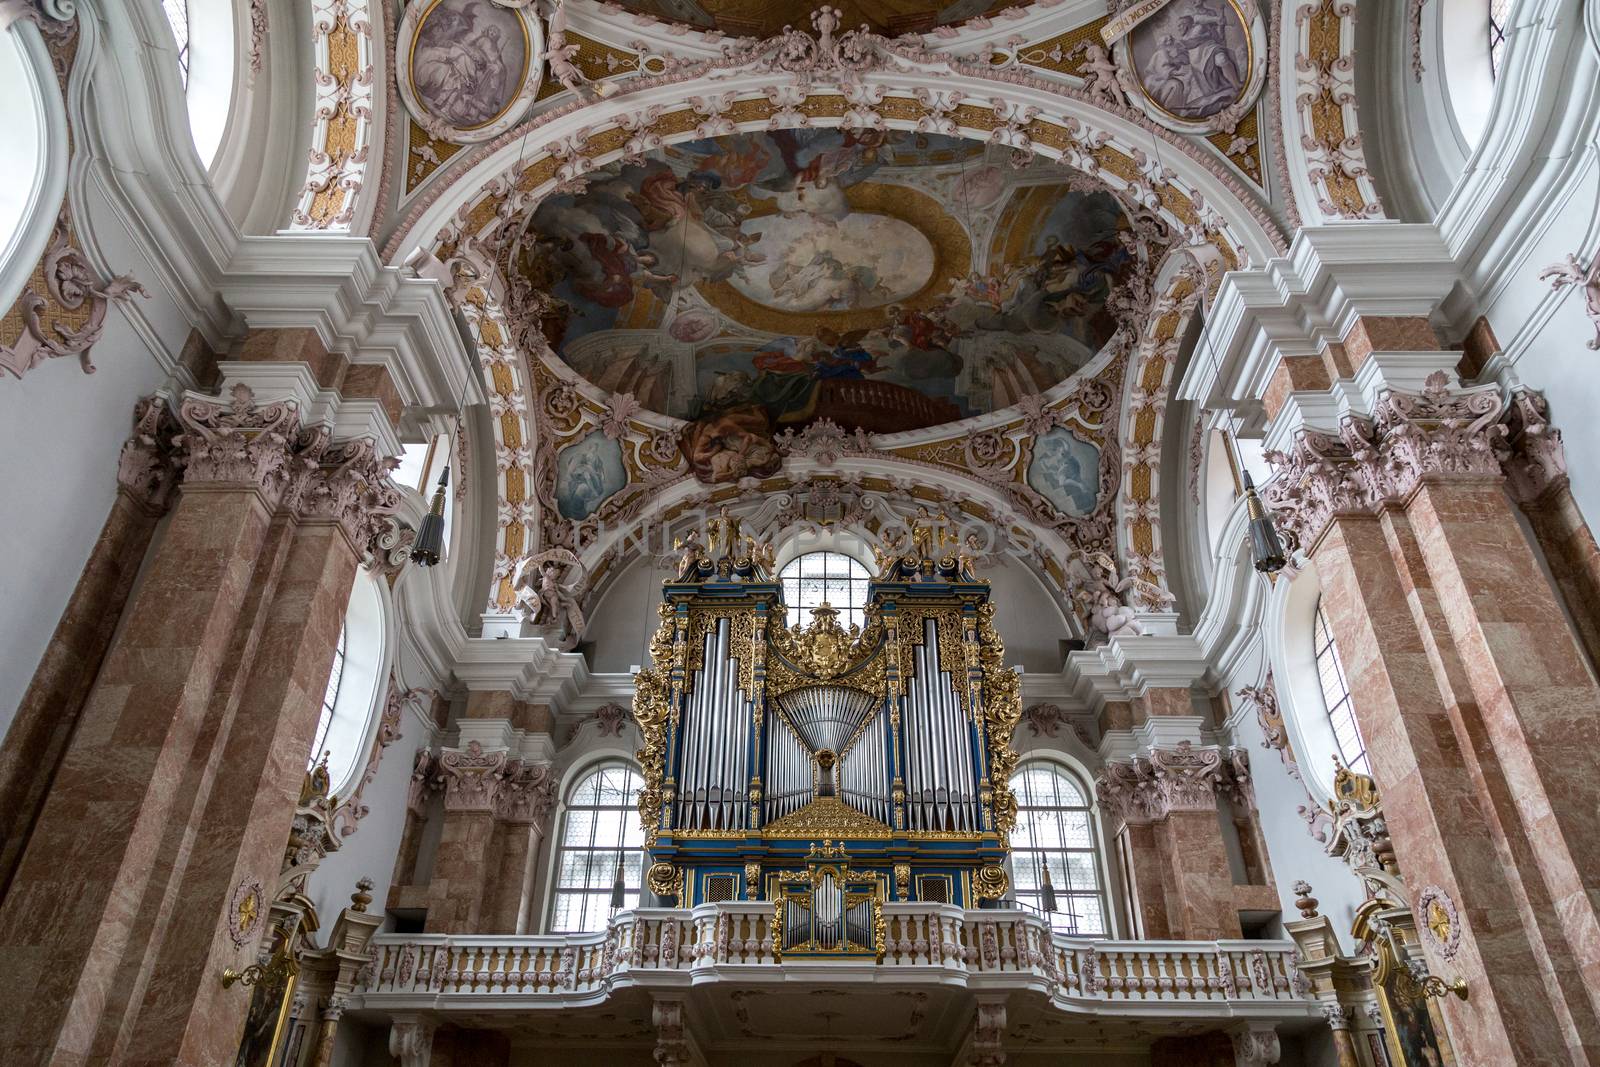 Innsbruck Cathedral, Austria by oliverfoerstner